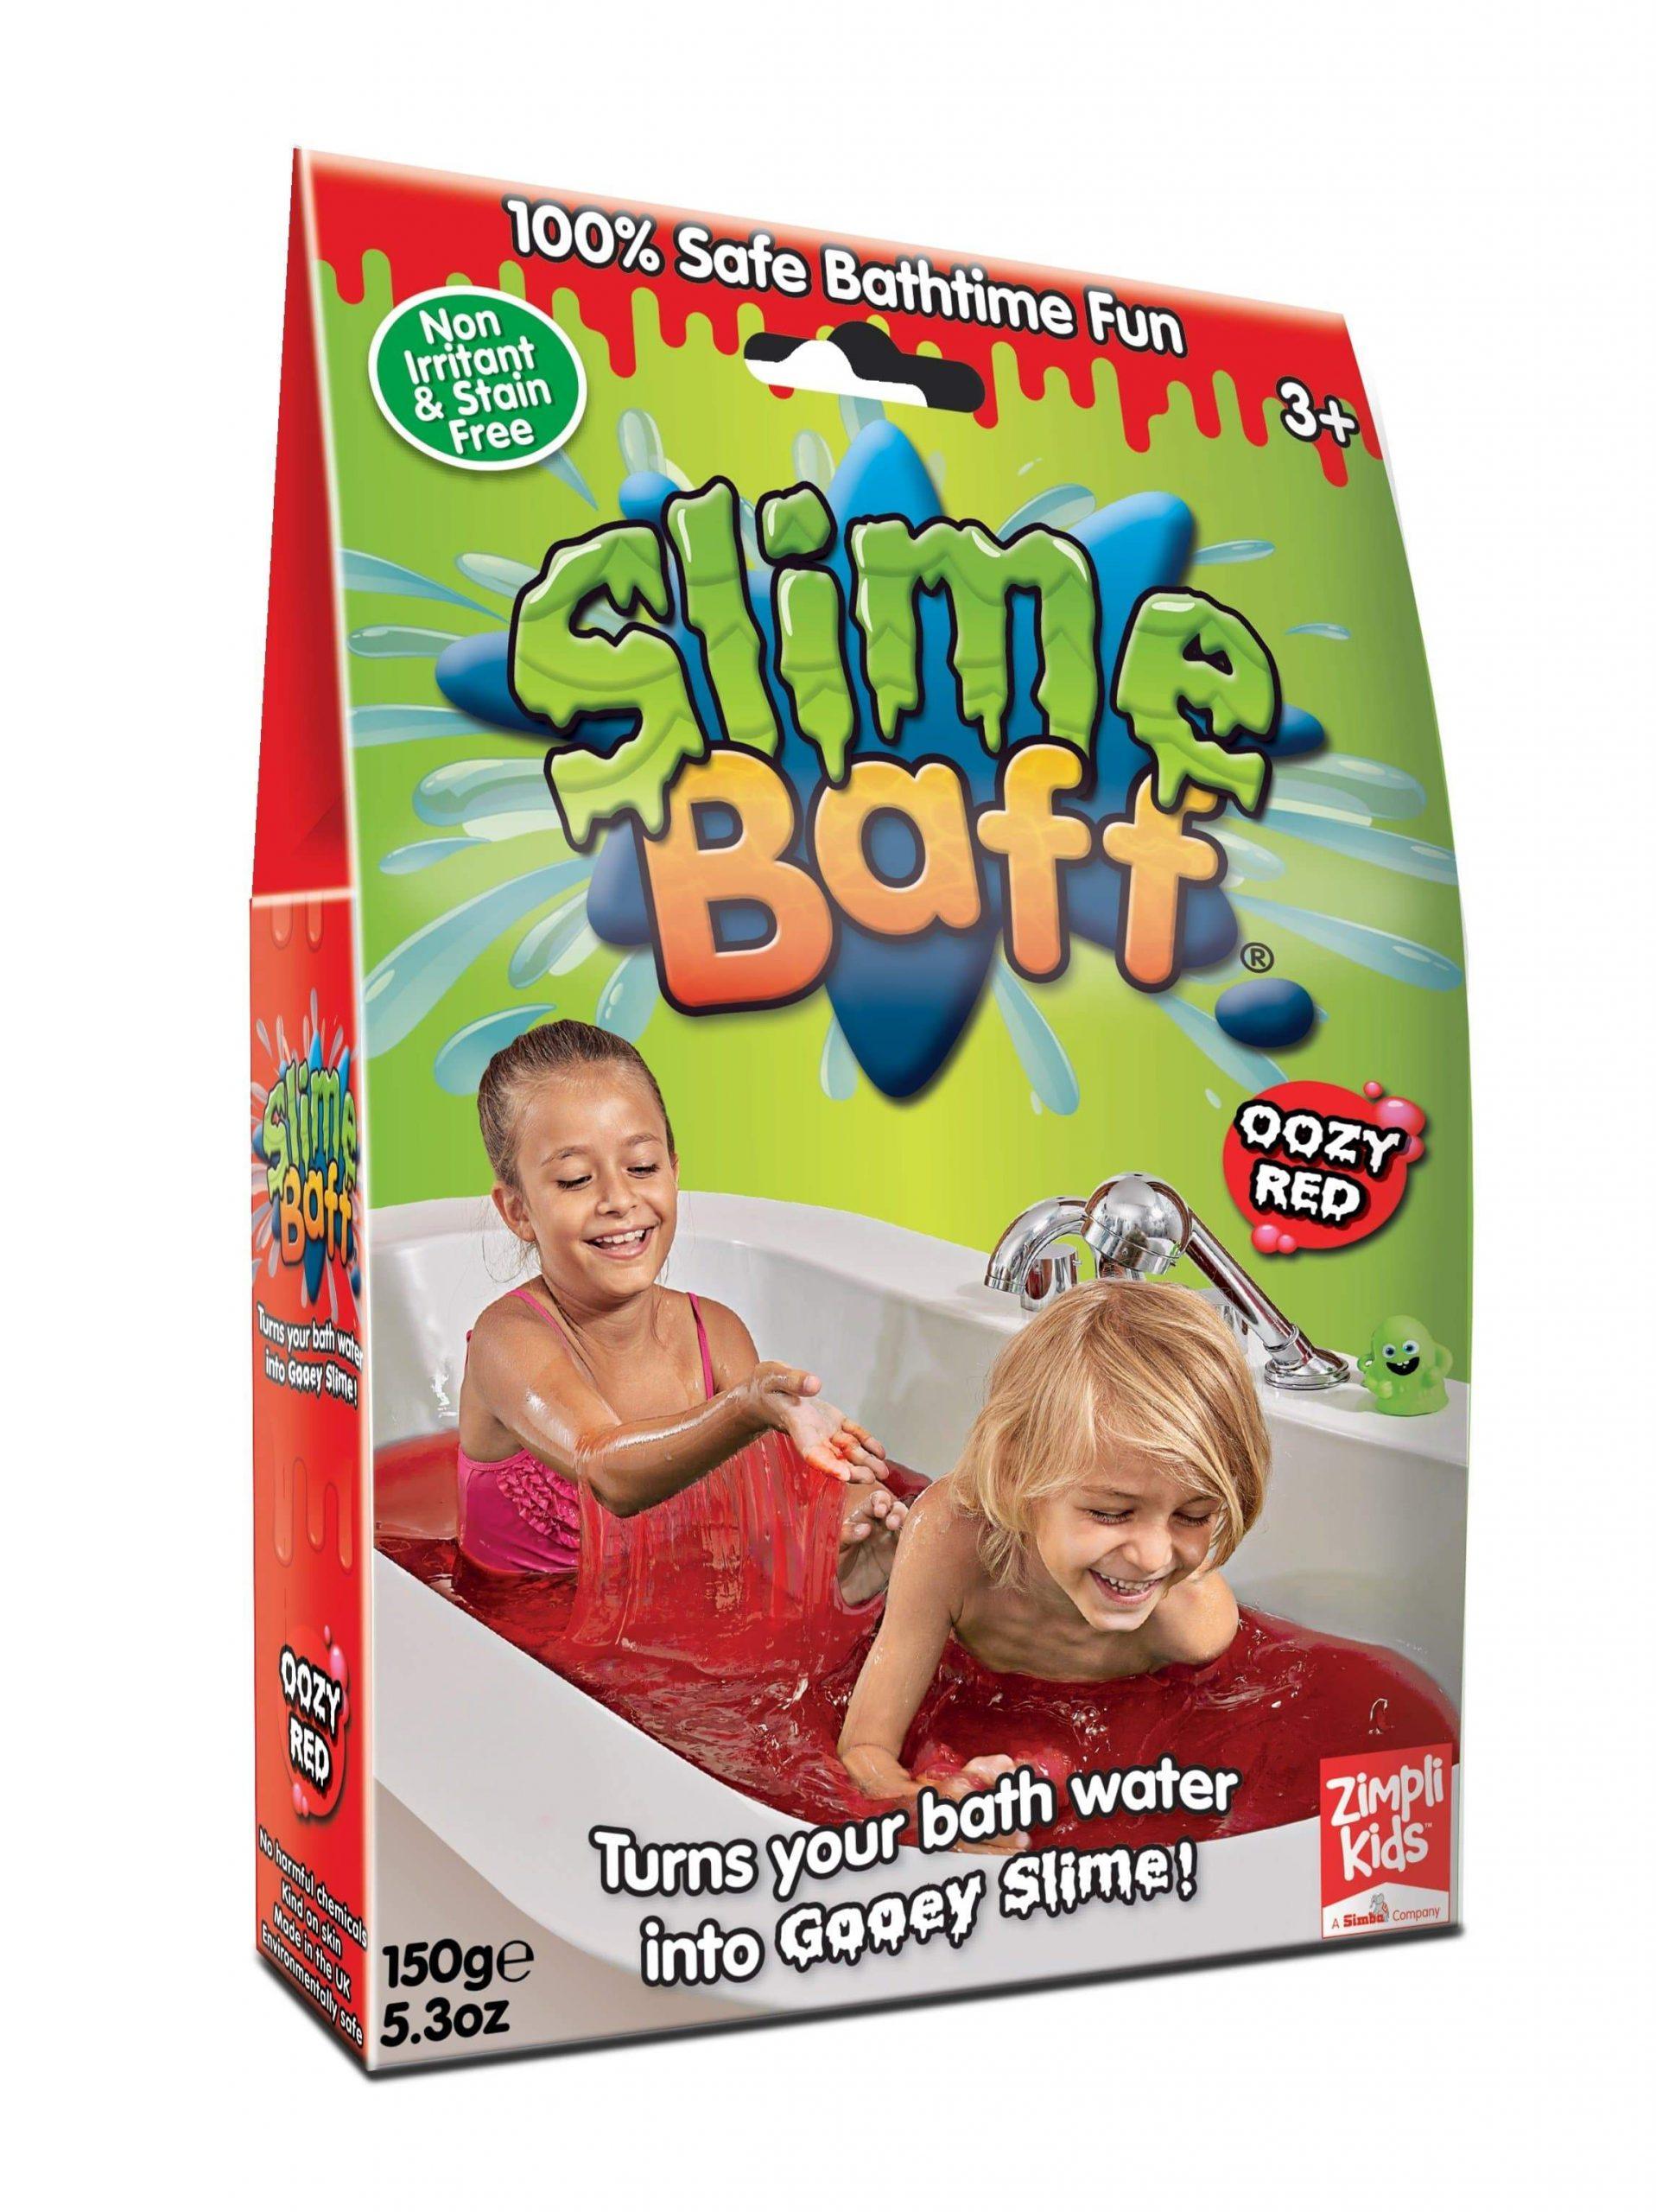 لعبة اوزي باف أحمر 150 جرام glibbi-Zimpli kids - Slime Baff Gunky